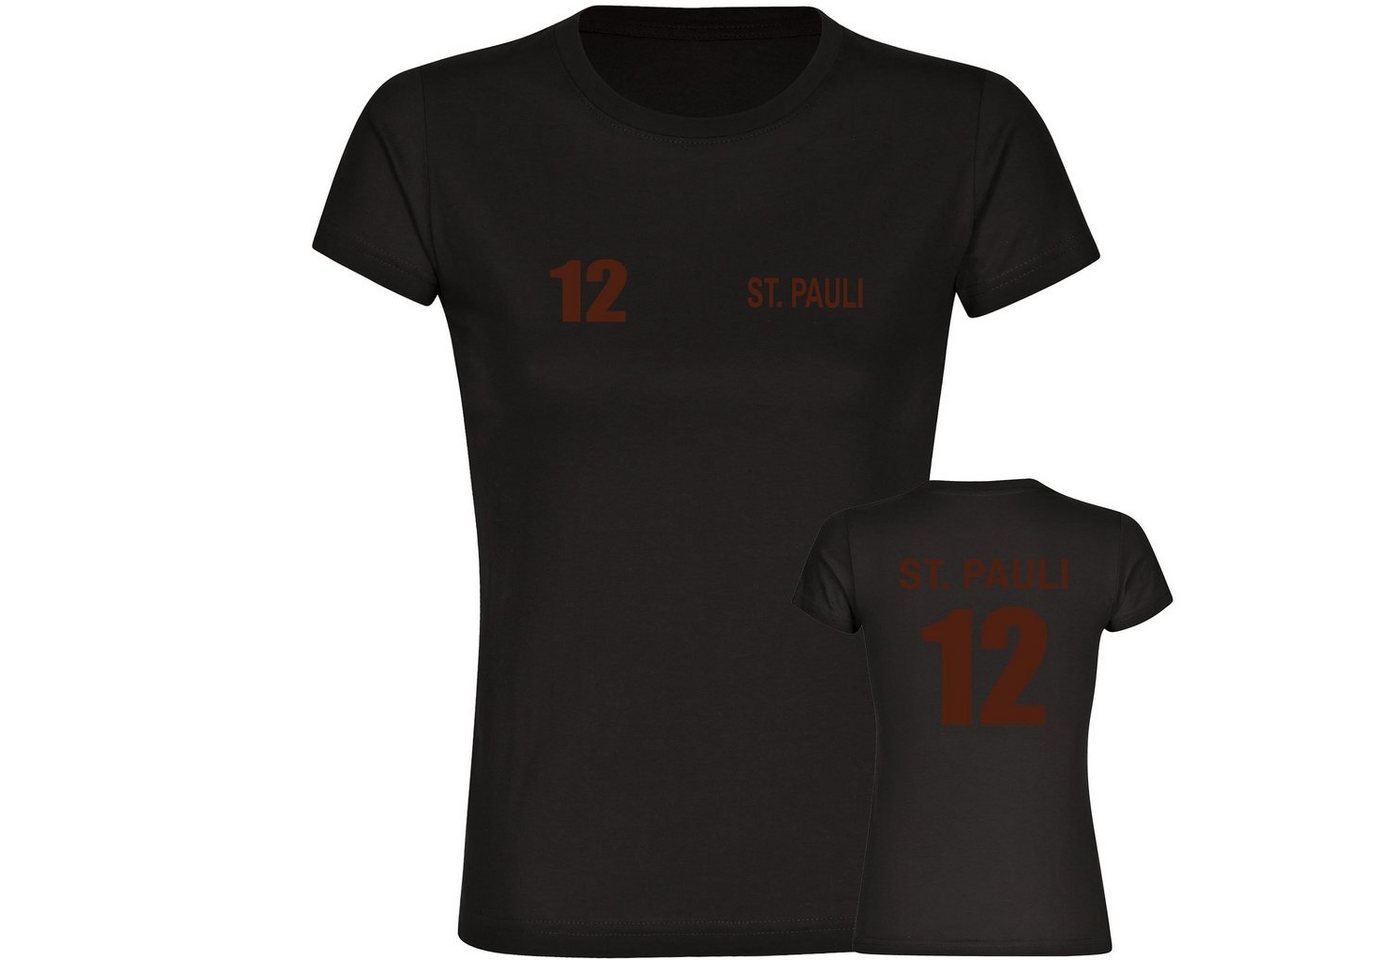 multifanshop T-Shirt Damen St. Pauli - Trikot 12 - Frauen von multifanshop